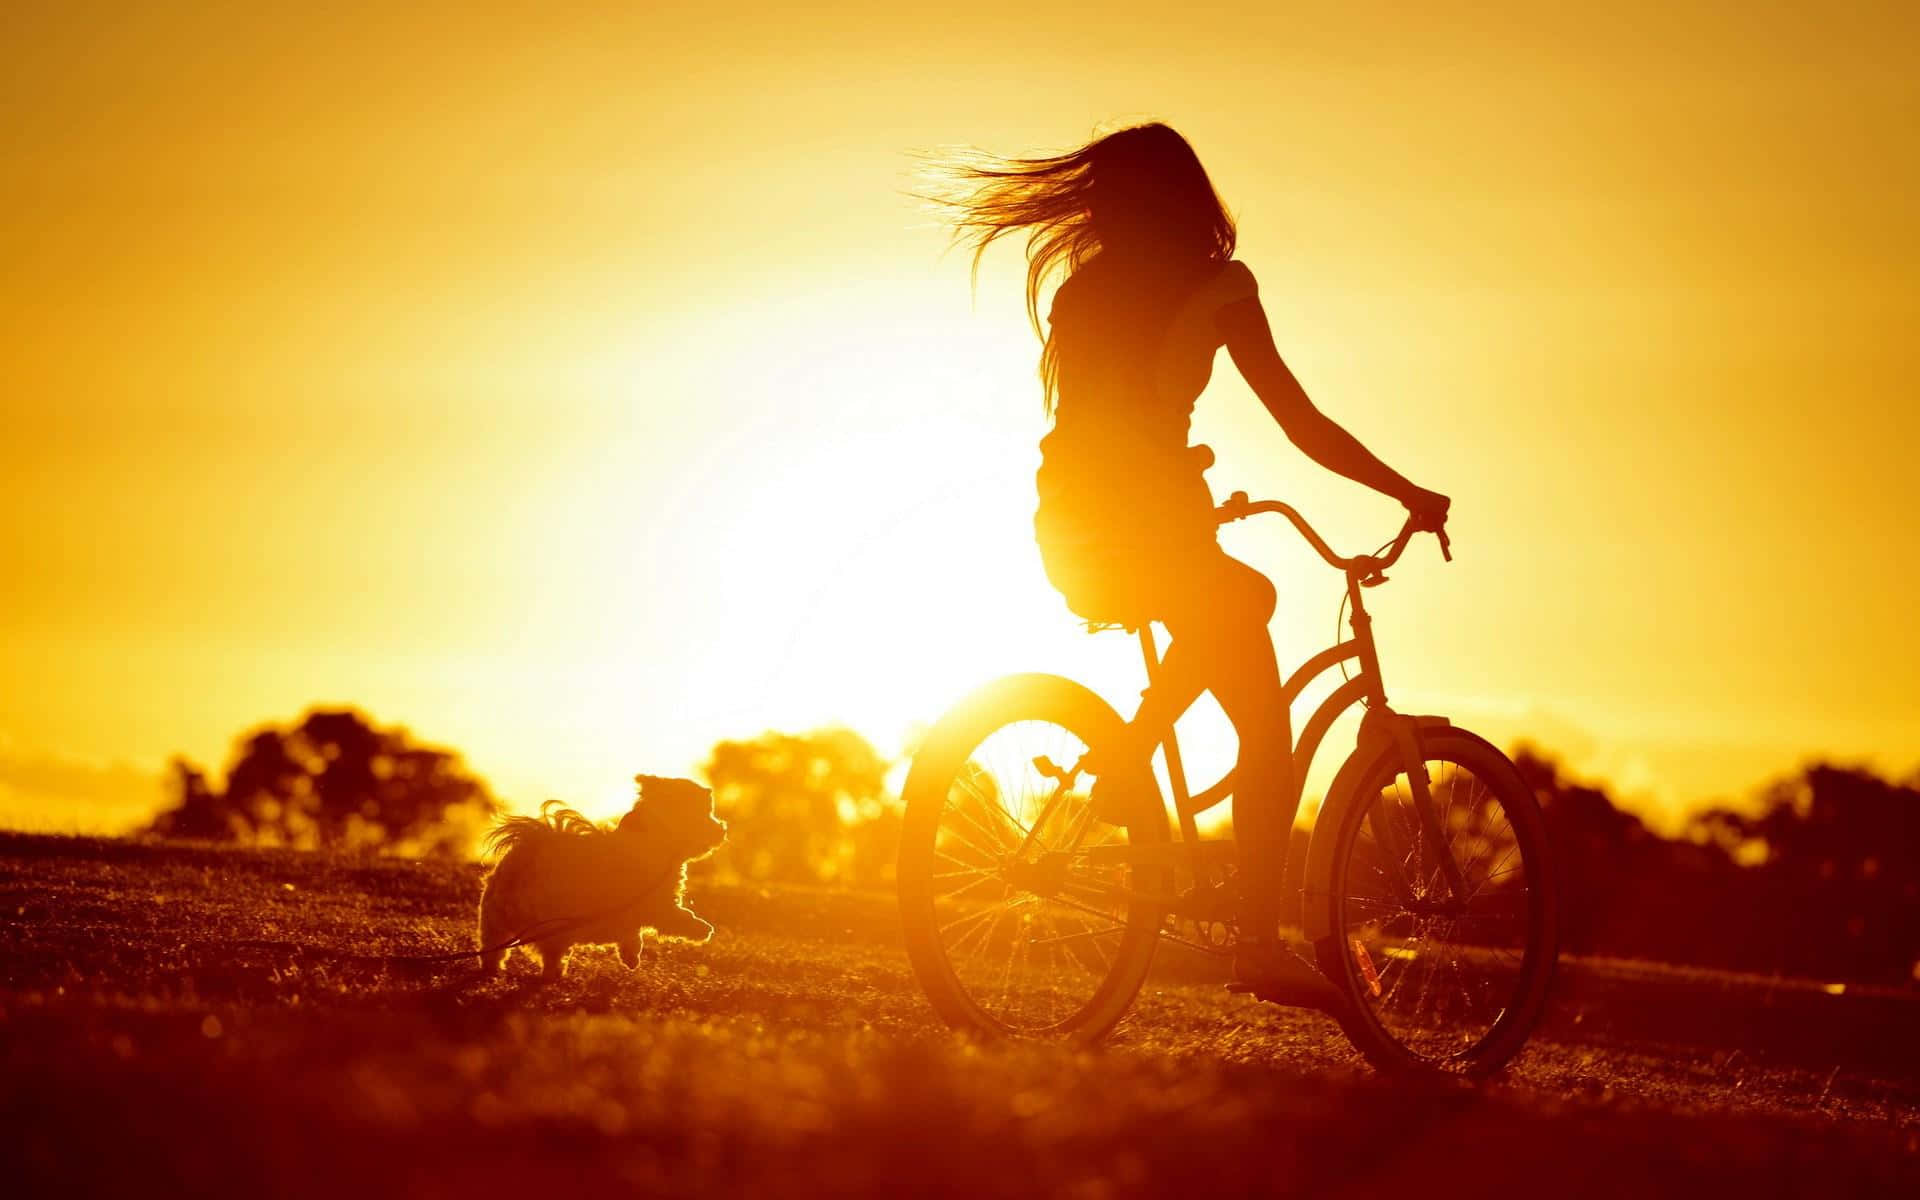 A Woman Riding A Bike